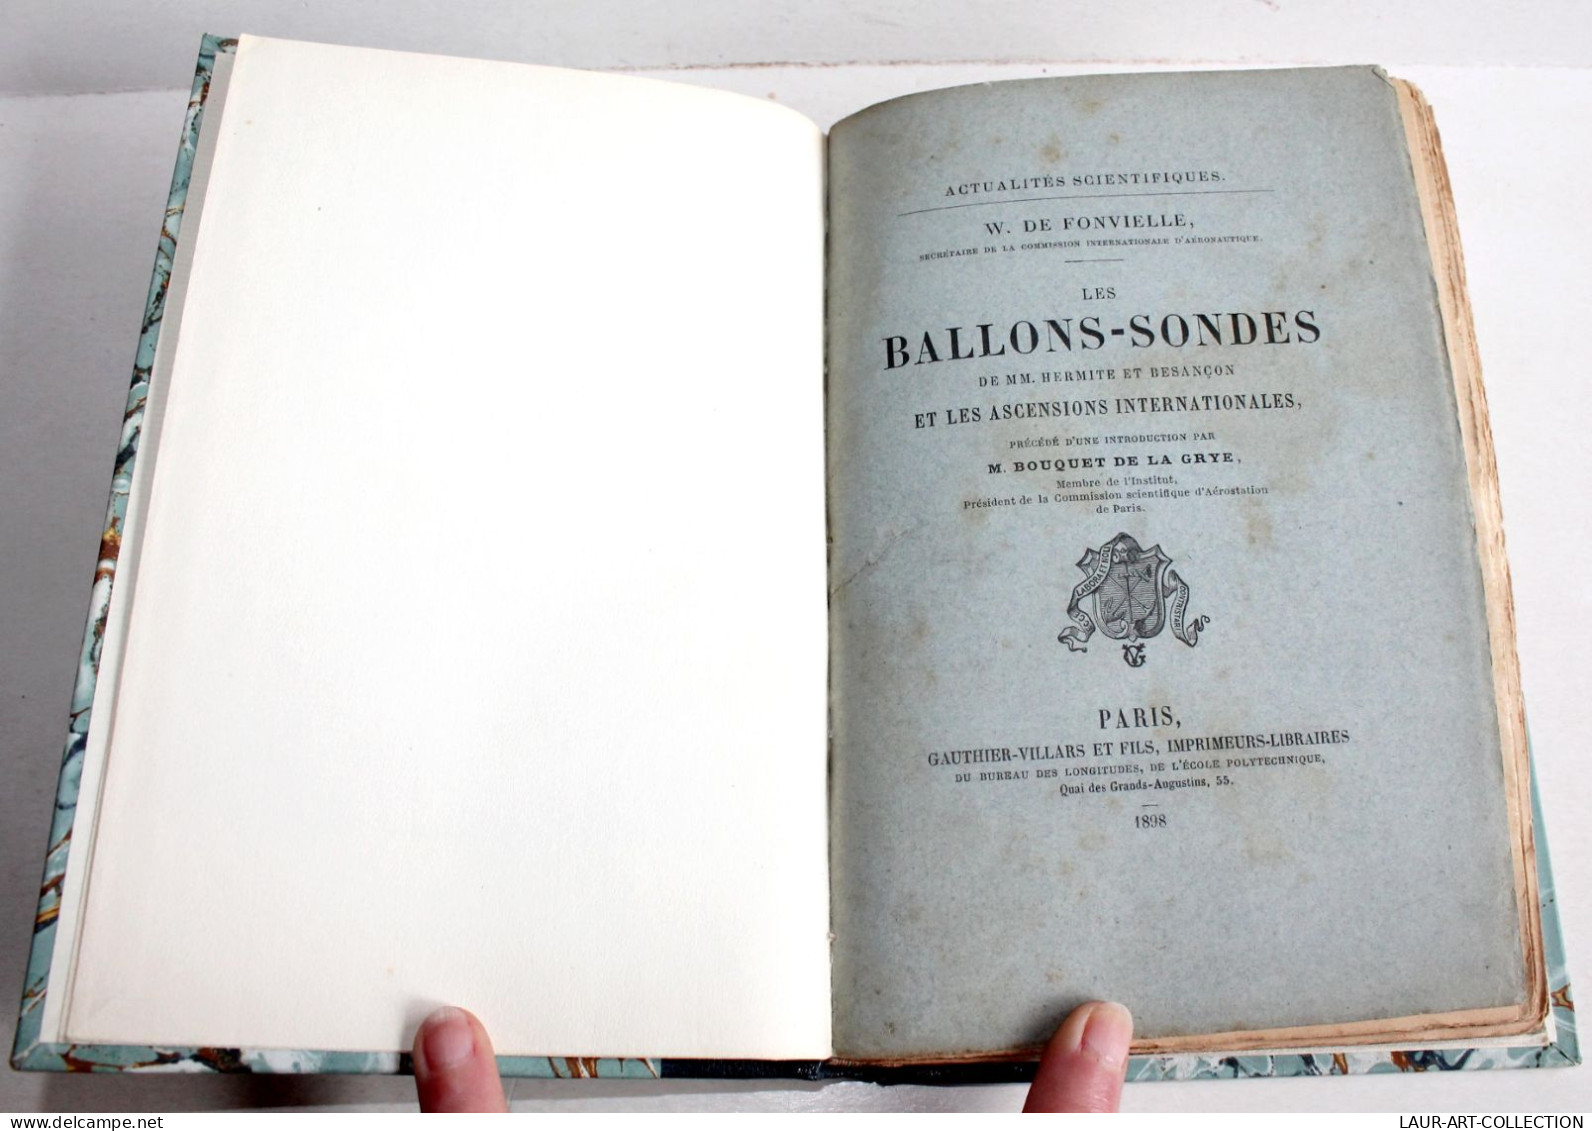 RARE ENVOI D'AUTEUR DE FONVIELLE! LES BALLONS SONDES DE HERMITE ET BESANCON 1898 / ANCIEN LIVRE XIXe SIECLE (2204.33) - Signierte Bücher